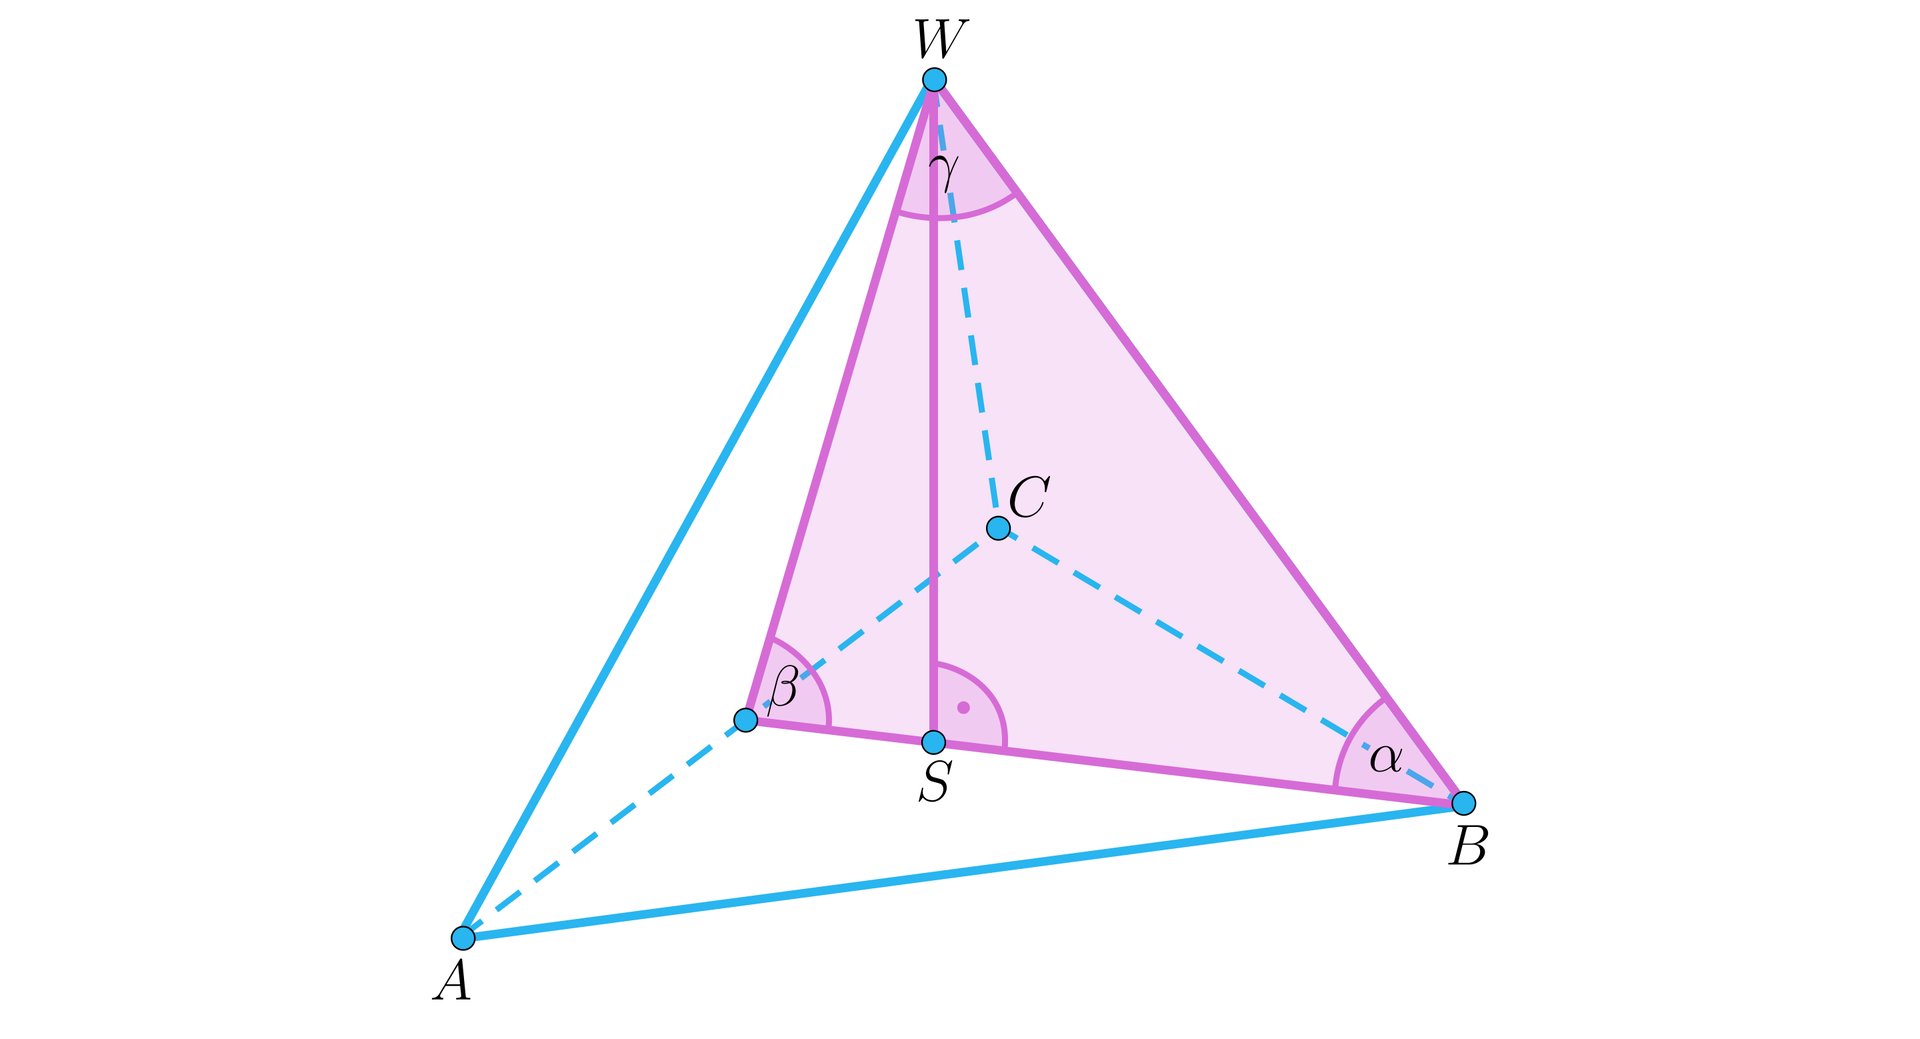 Ilustracja przedstawia ostrosłup prawidłowy trójkątny A B C  W. Z wierzchołka W upuszczono wysokość bryły na podstawę w punkcie S. Z wierzchołka B upuszczono wysokość podstawy bryły. Wysokość ta przechodzi przez punkt S i pada na odcinek A C pod kątem prostym w punkcie D. Powstał trójkąt D B W z zaznaczonymi kątami alfa przy wierzchołku B, gamma przy wierzchołku W oraz beta przy wierzchołku D. 